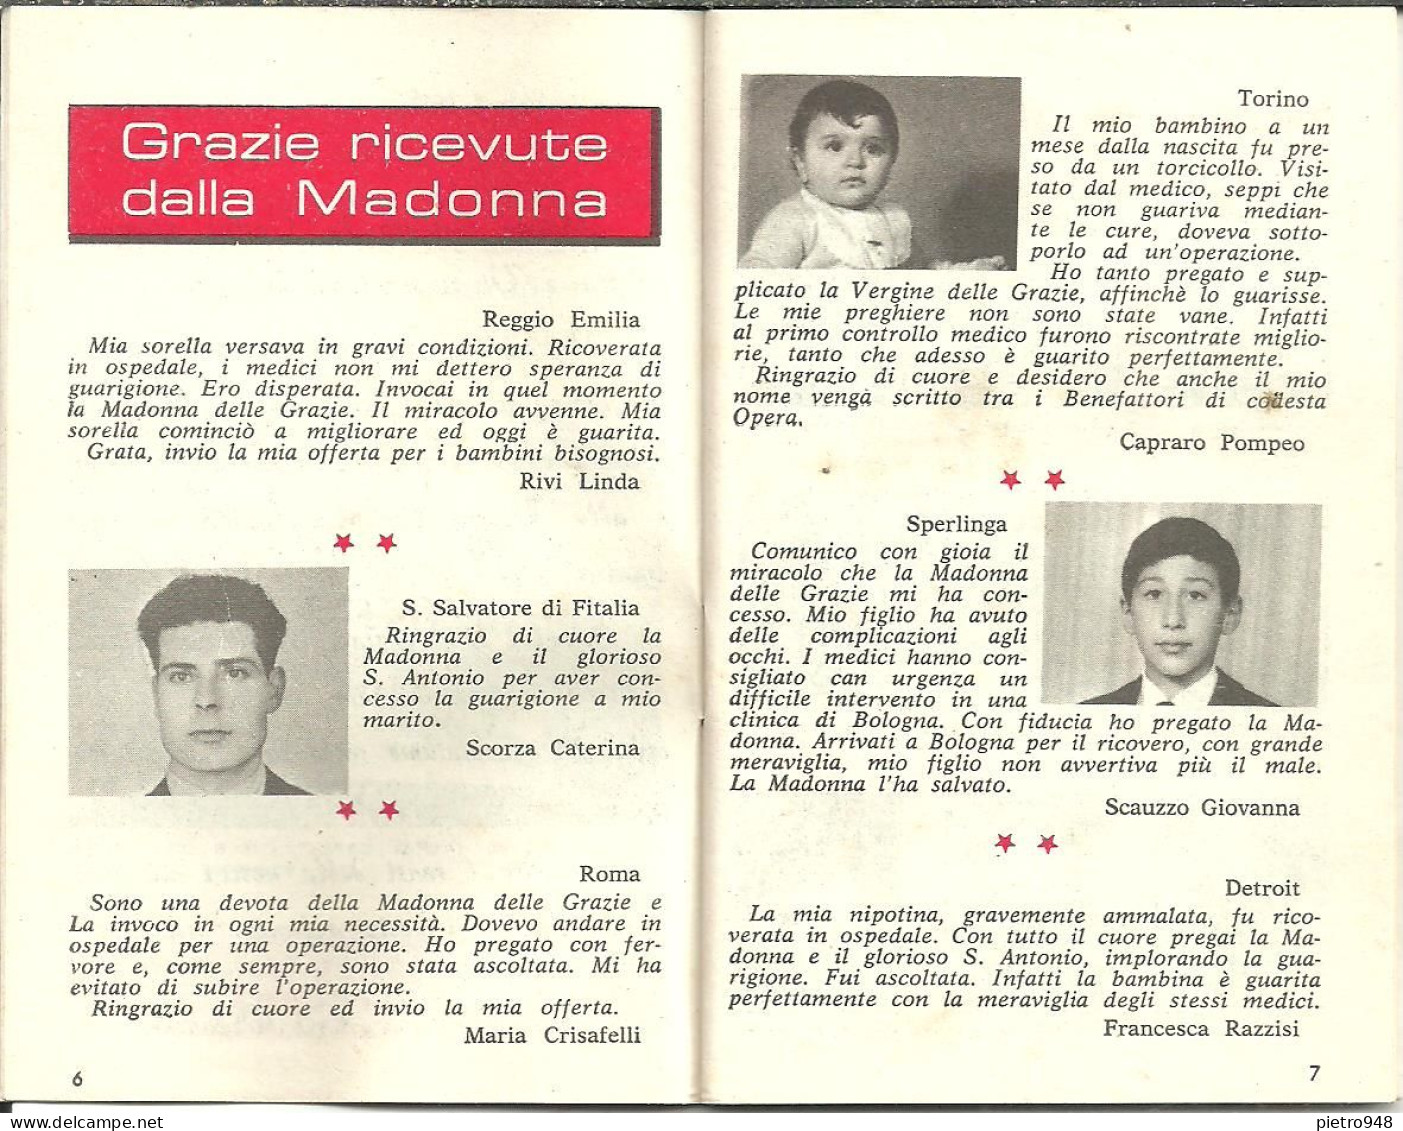 Libro (Libretto) Religioso "Opera Madonna Delle Grazie E Sant'Antonio" Corato (Bari), Agendina 1970 - Godsdienst / Spiritualisme